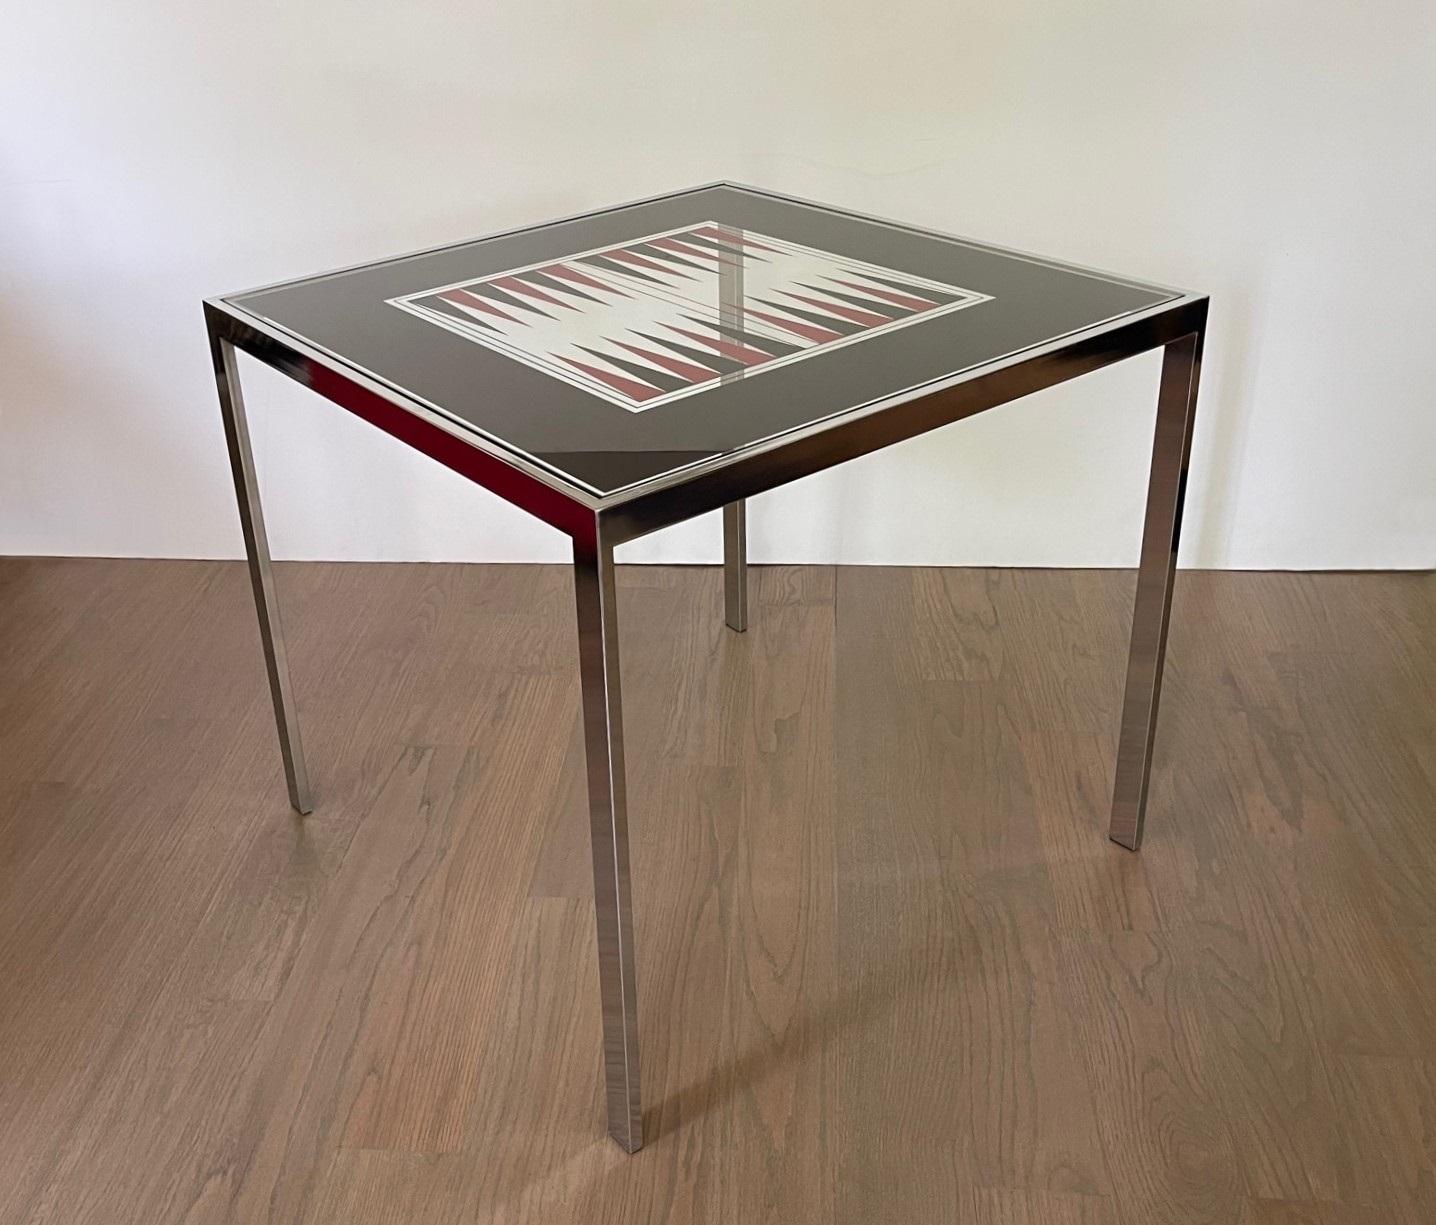 Sehr minimalistisch und maskulin. Dieser Backgammon-Tisch aus verchromtem Stahl und Spiegelglas, Maison Jansen, um 1975. Backgammon ist ein Spiel mit Strategie und Glück, das so alt ist wie die Zeit selbst. Die Handwerkskunst ist einfach